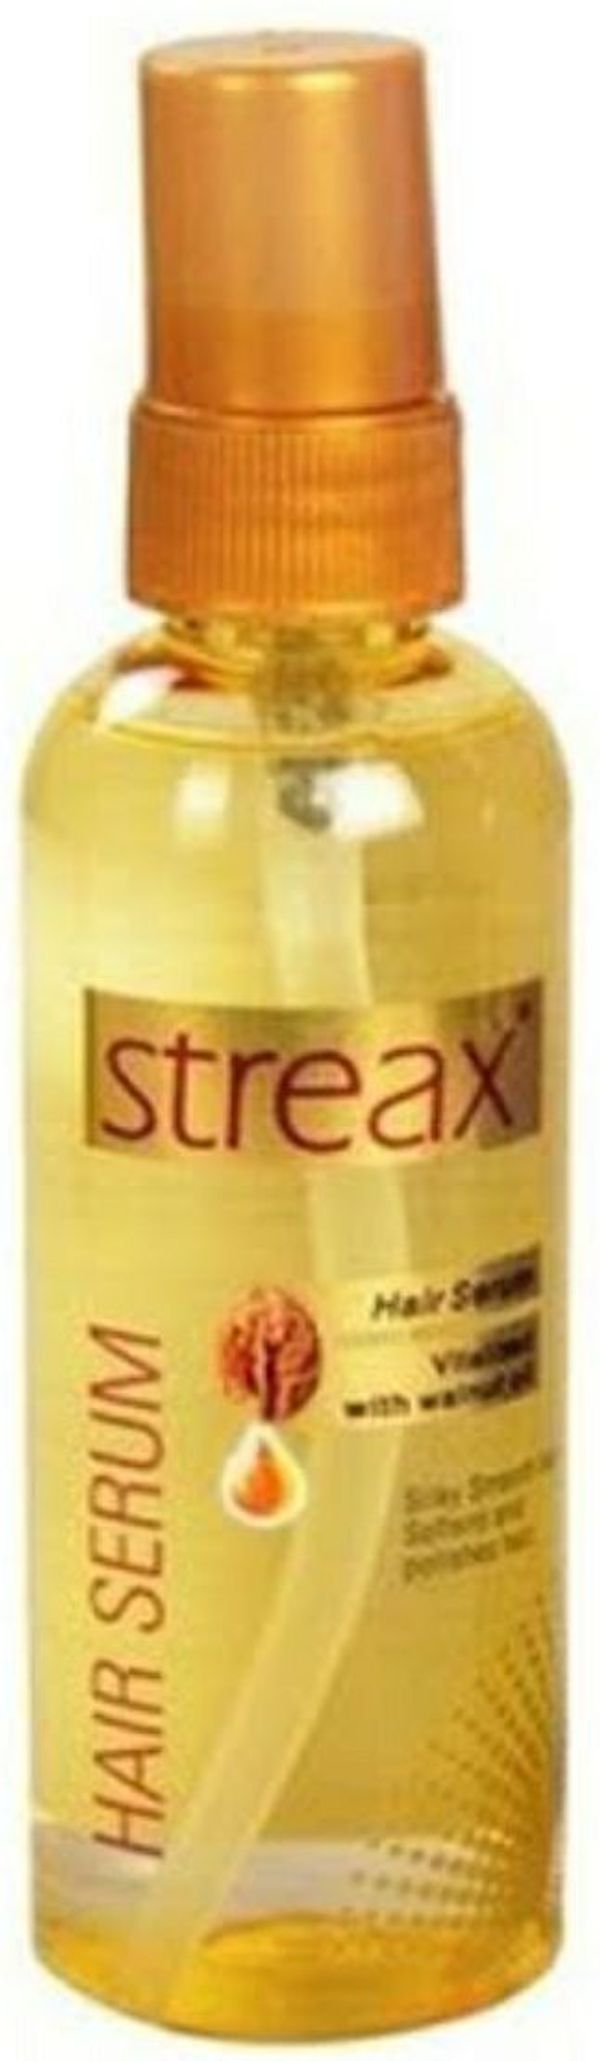 Streax Walnut Serum,